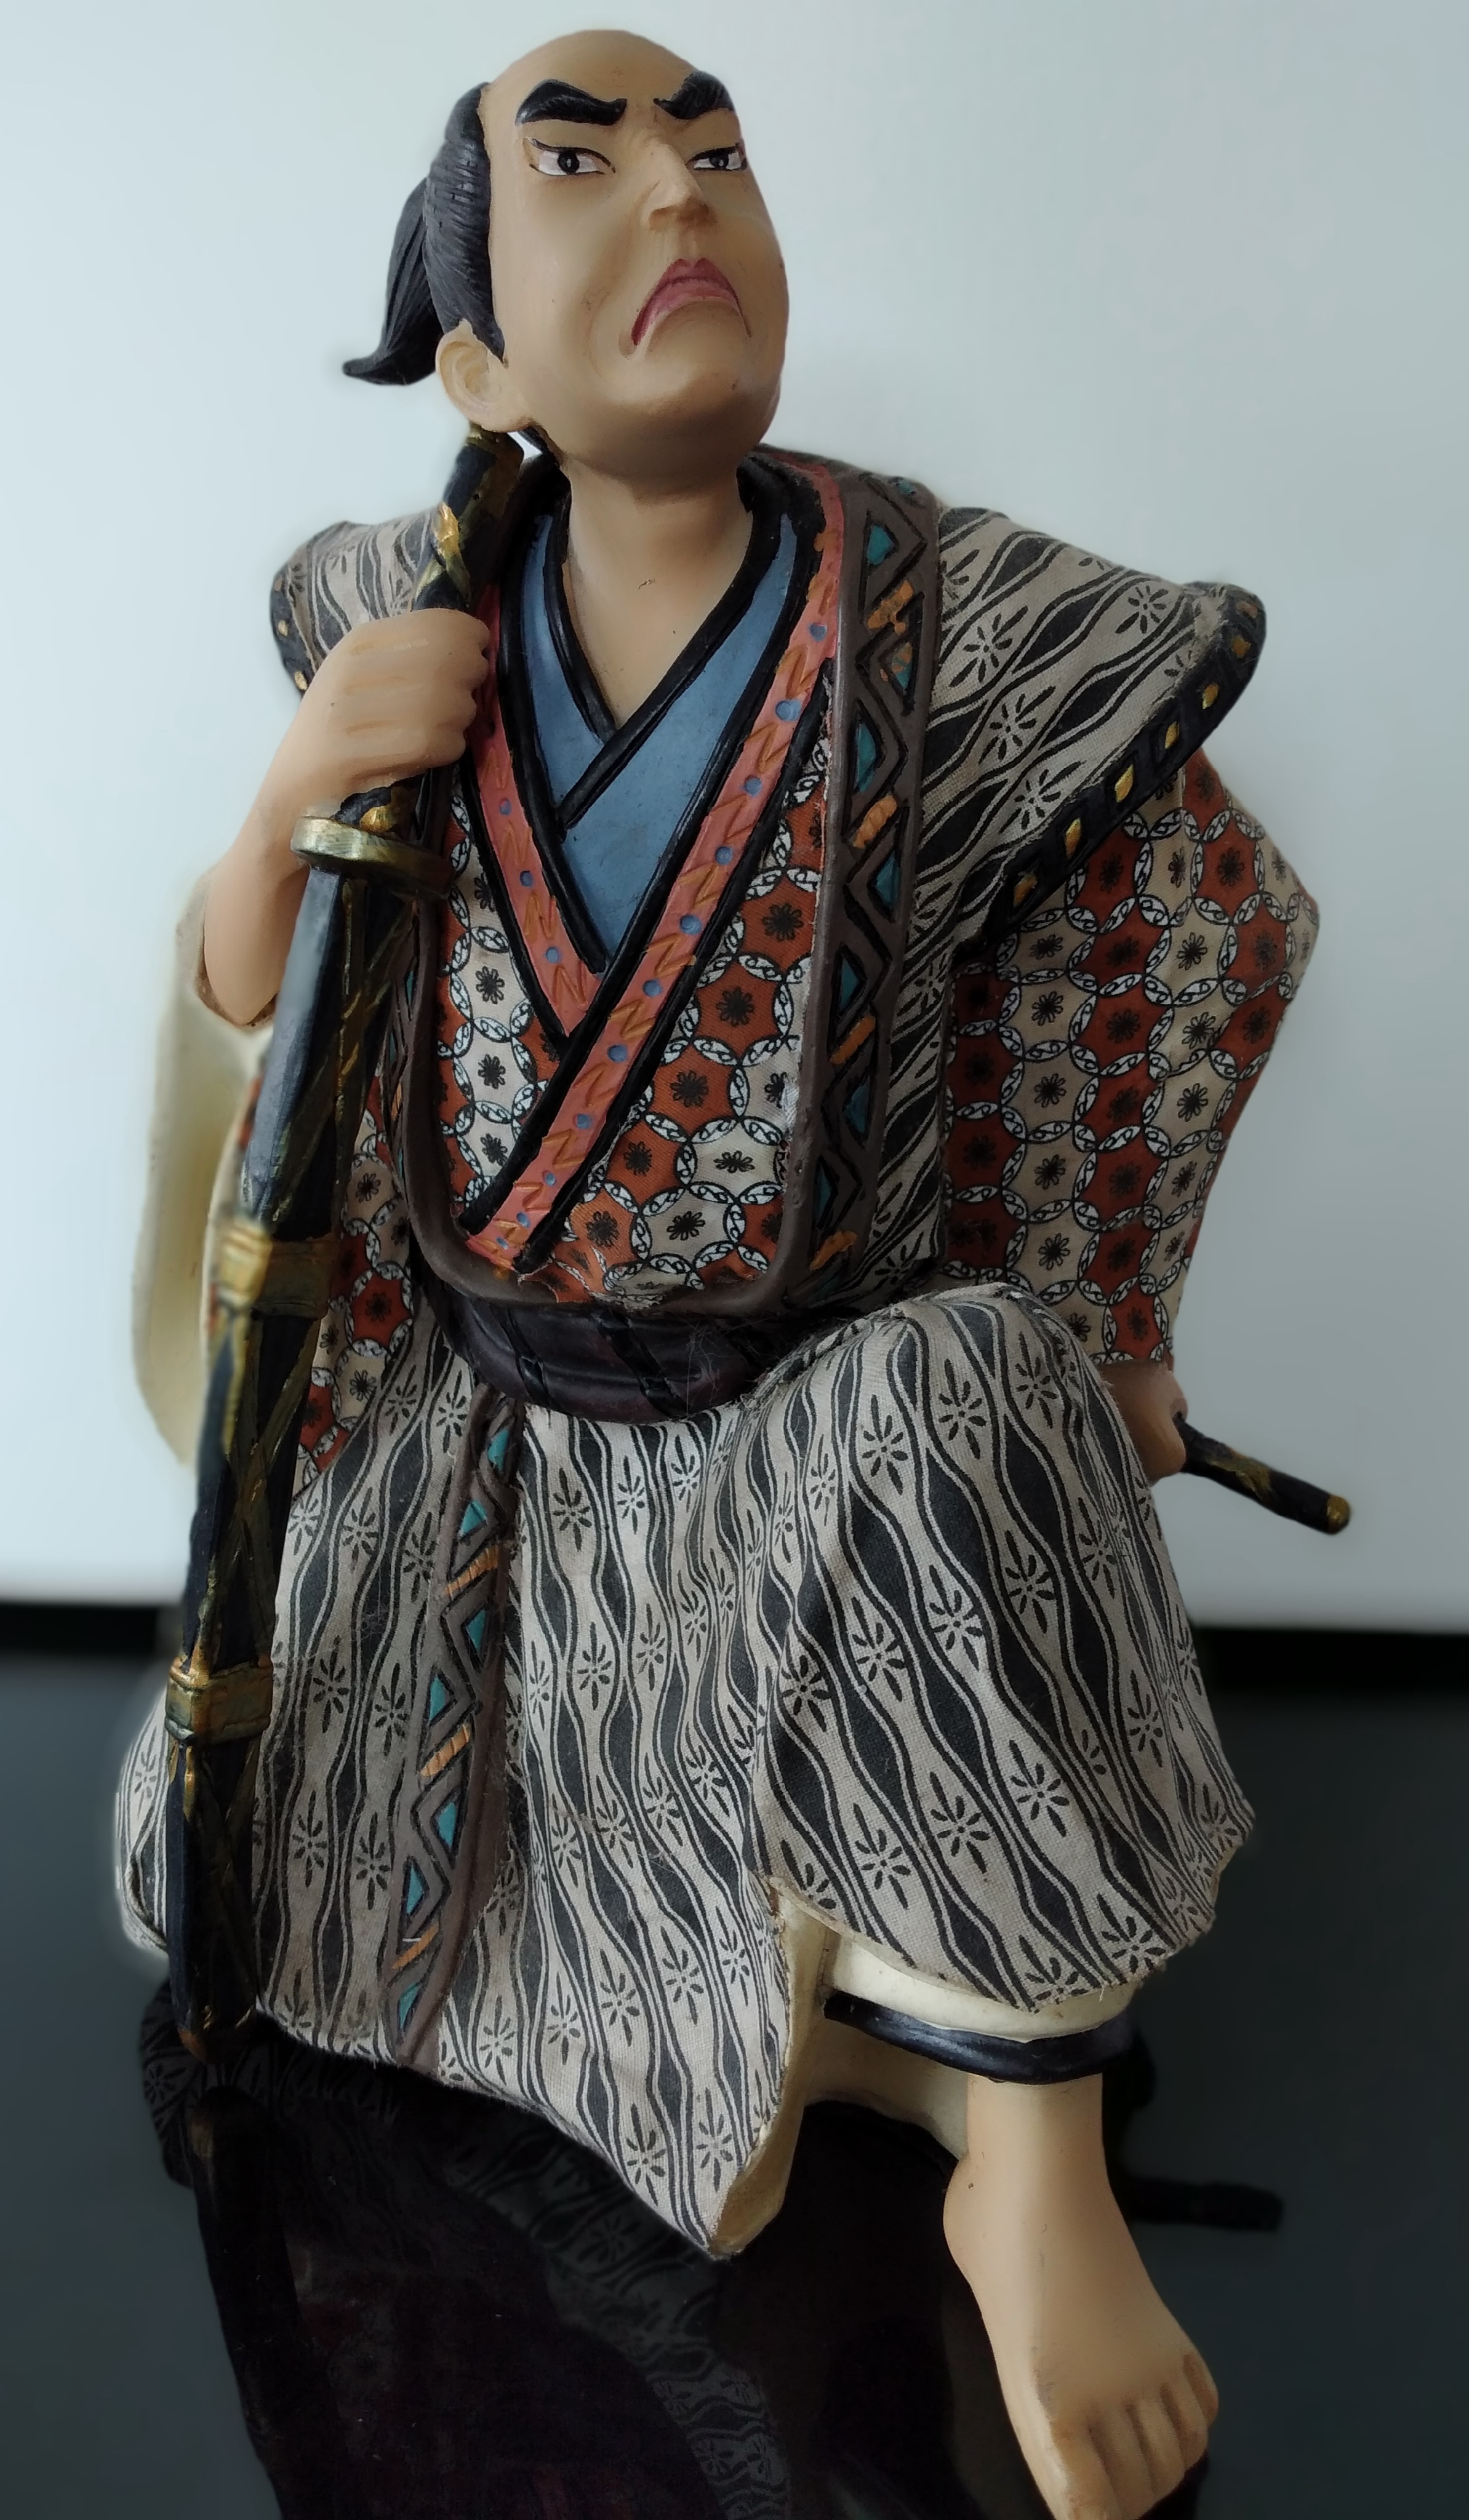 Escultura guerreiro samurai